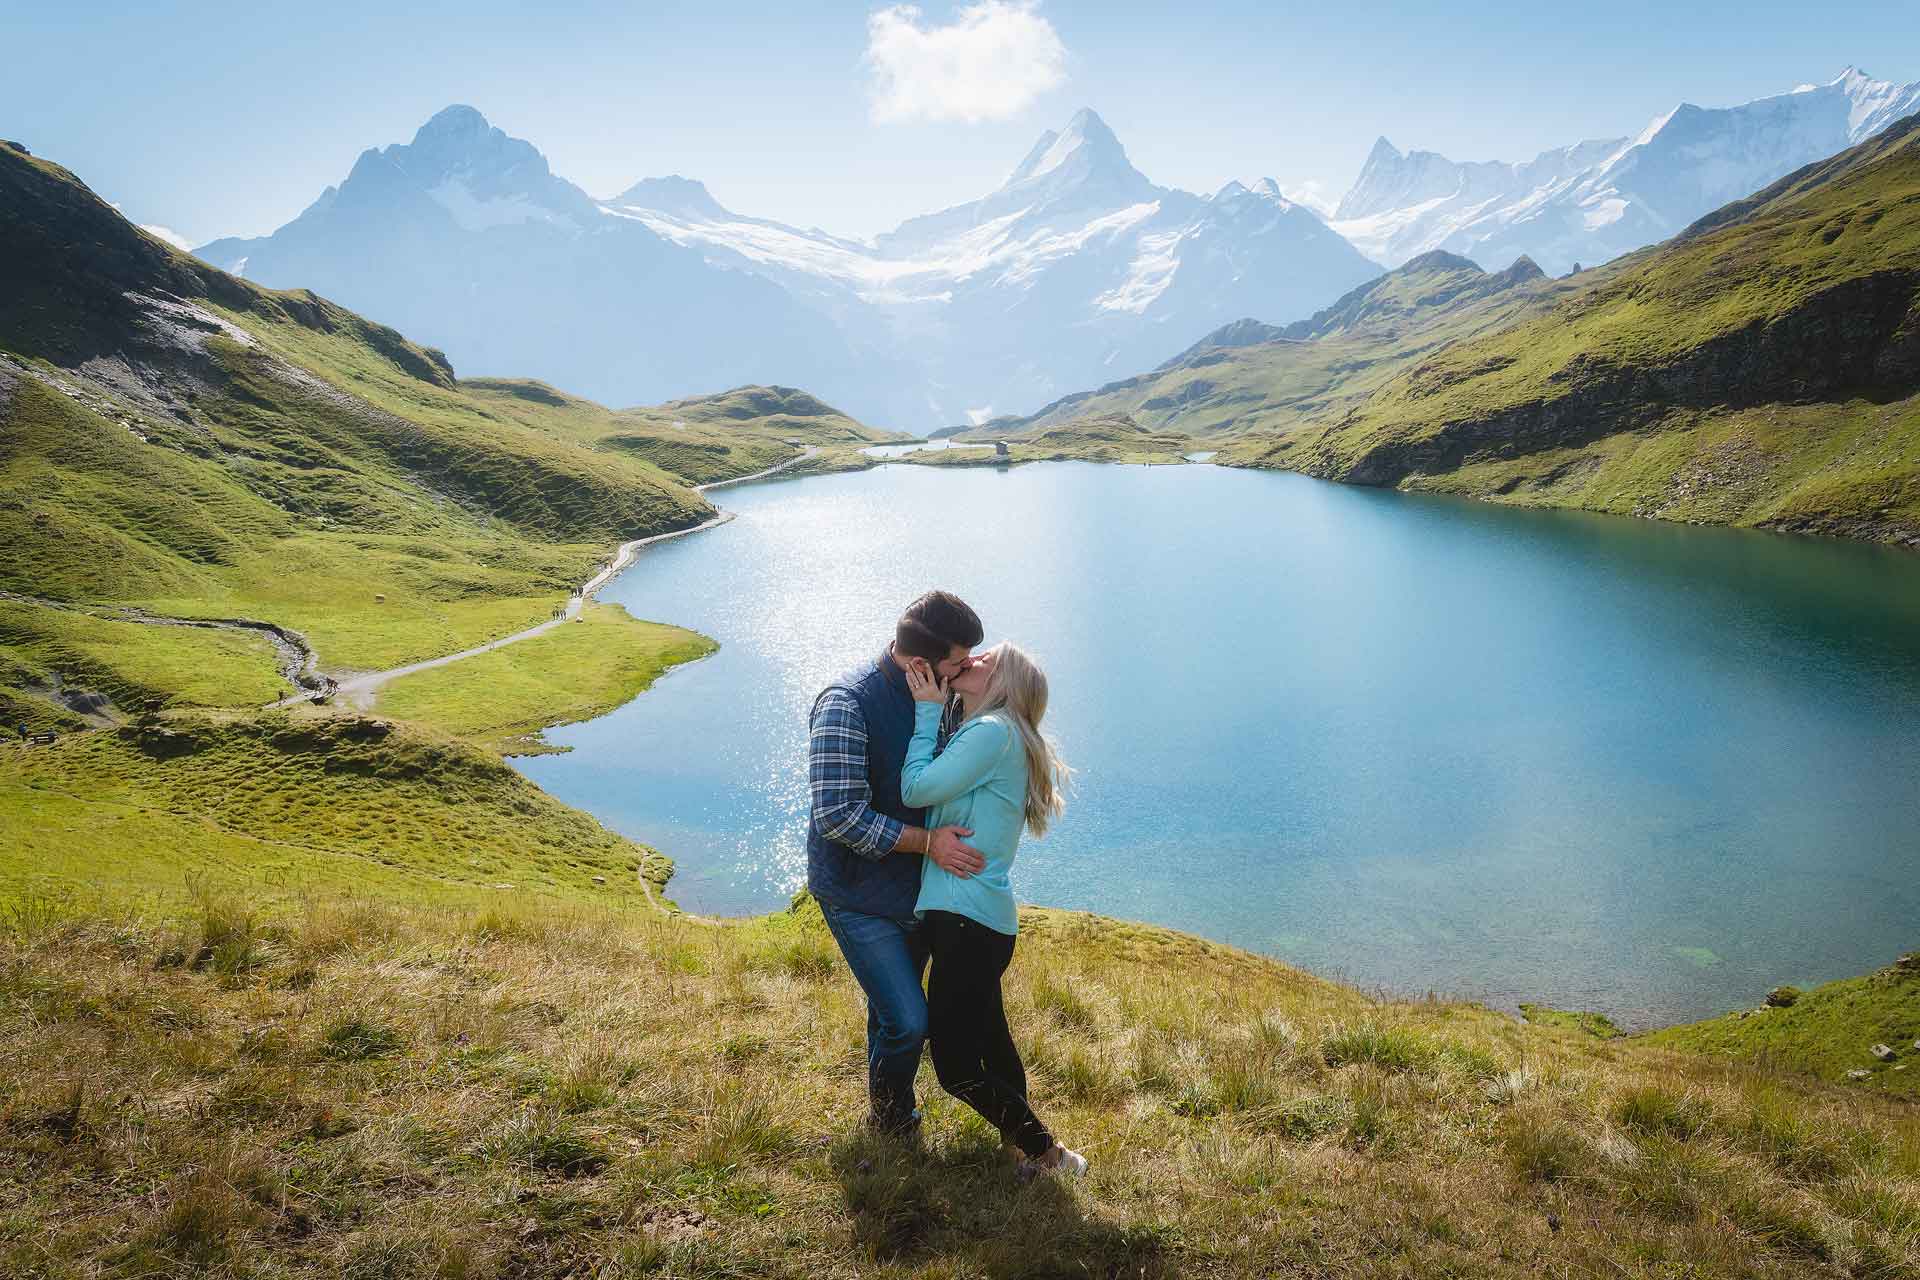 Marriage proposal at Bachalpsee Lake